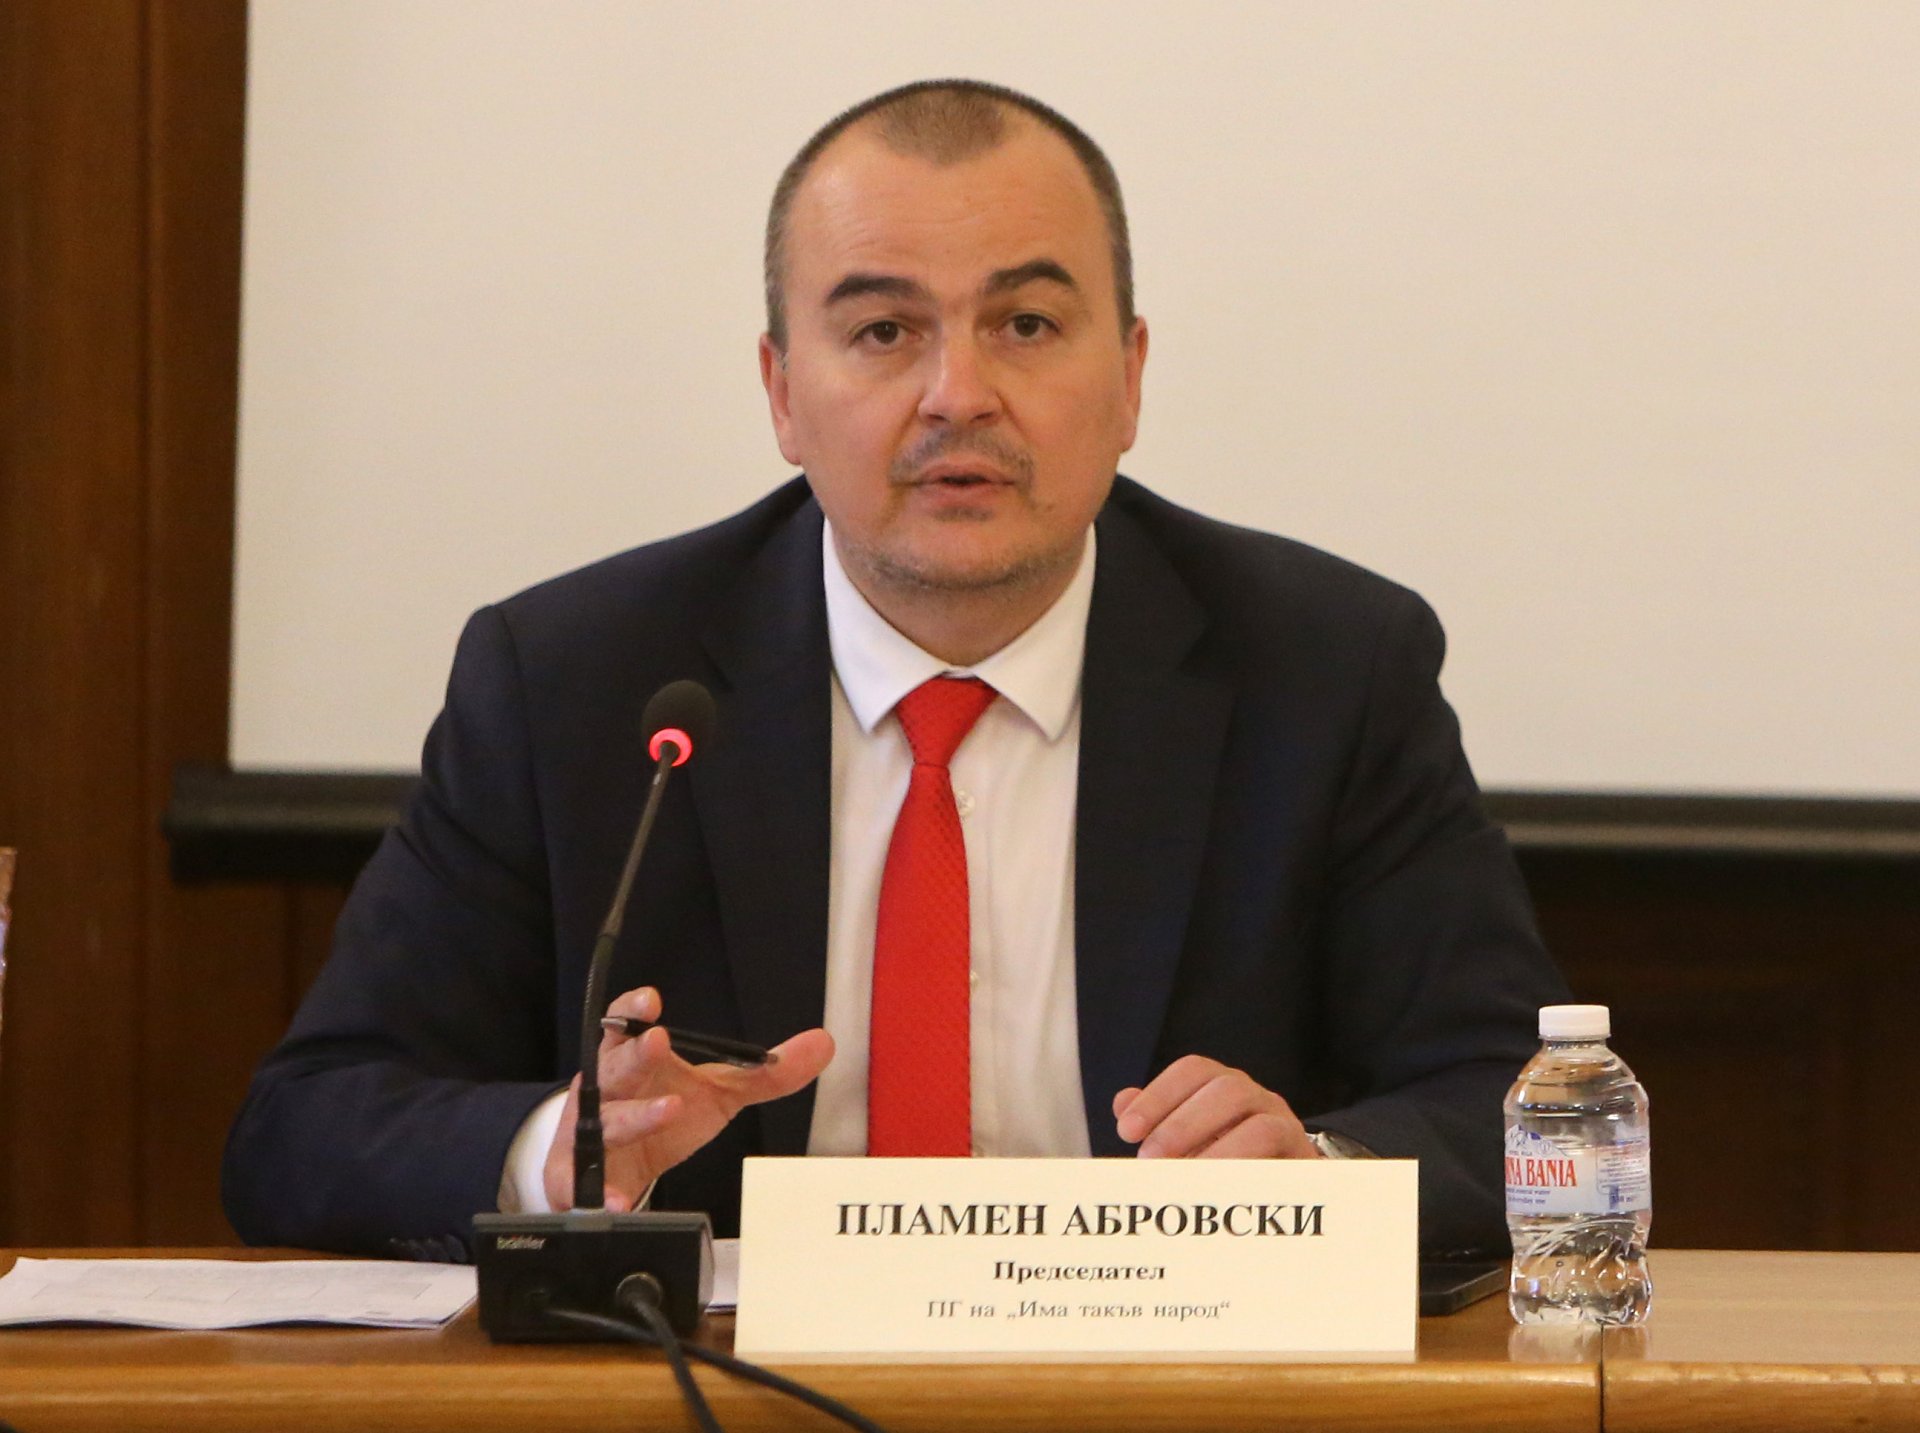 Пламен Абровски, председател на парламентарната комисия по земеделие